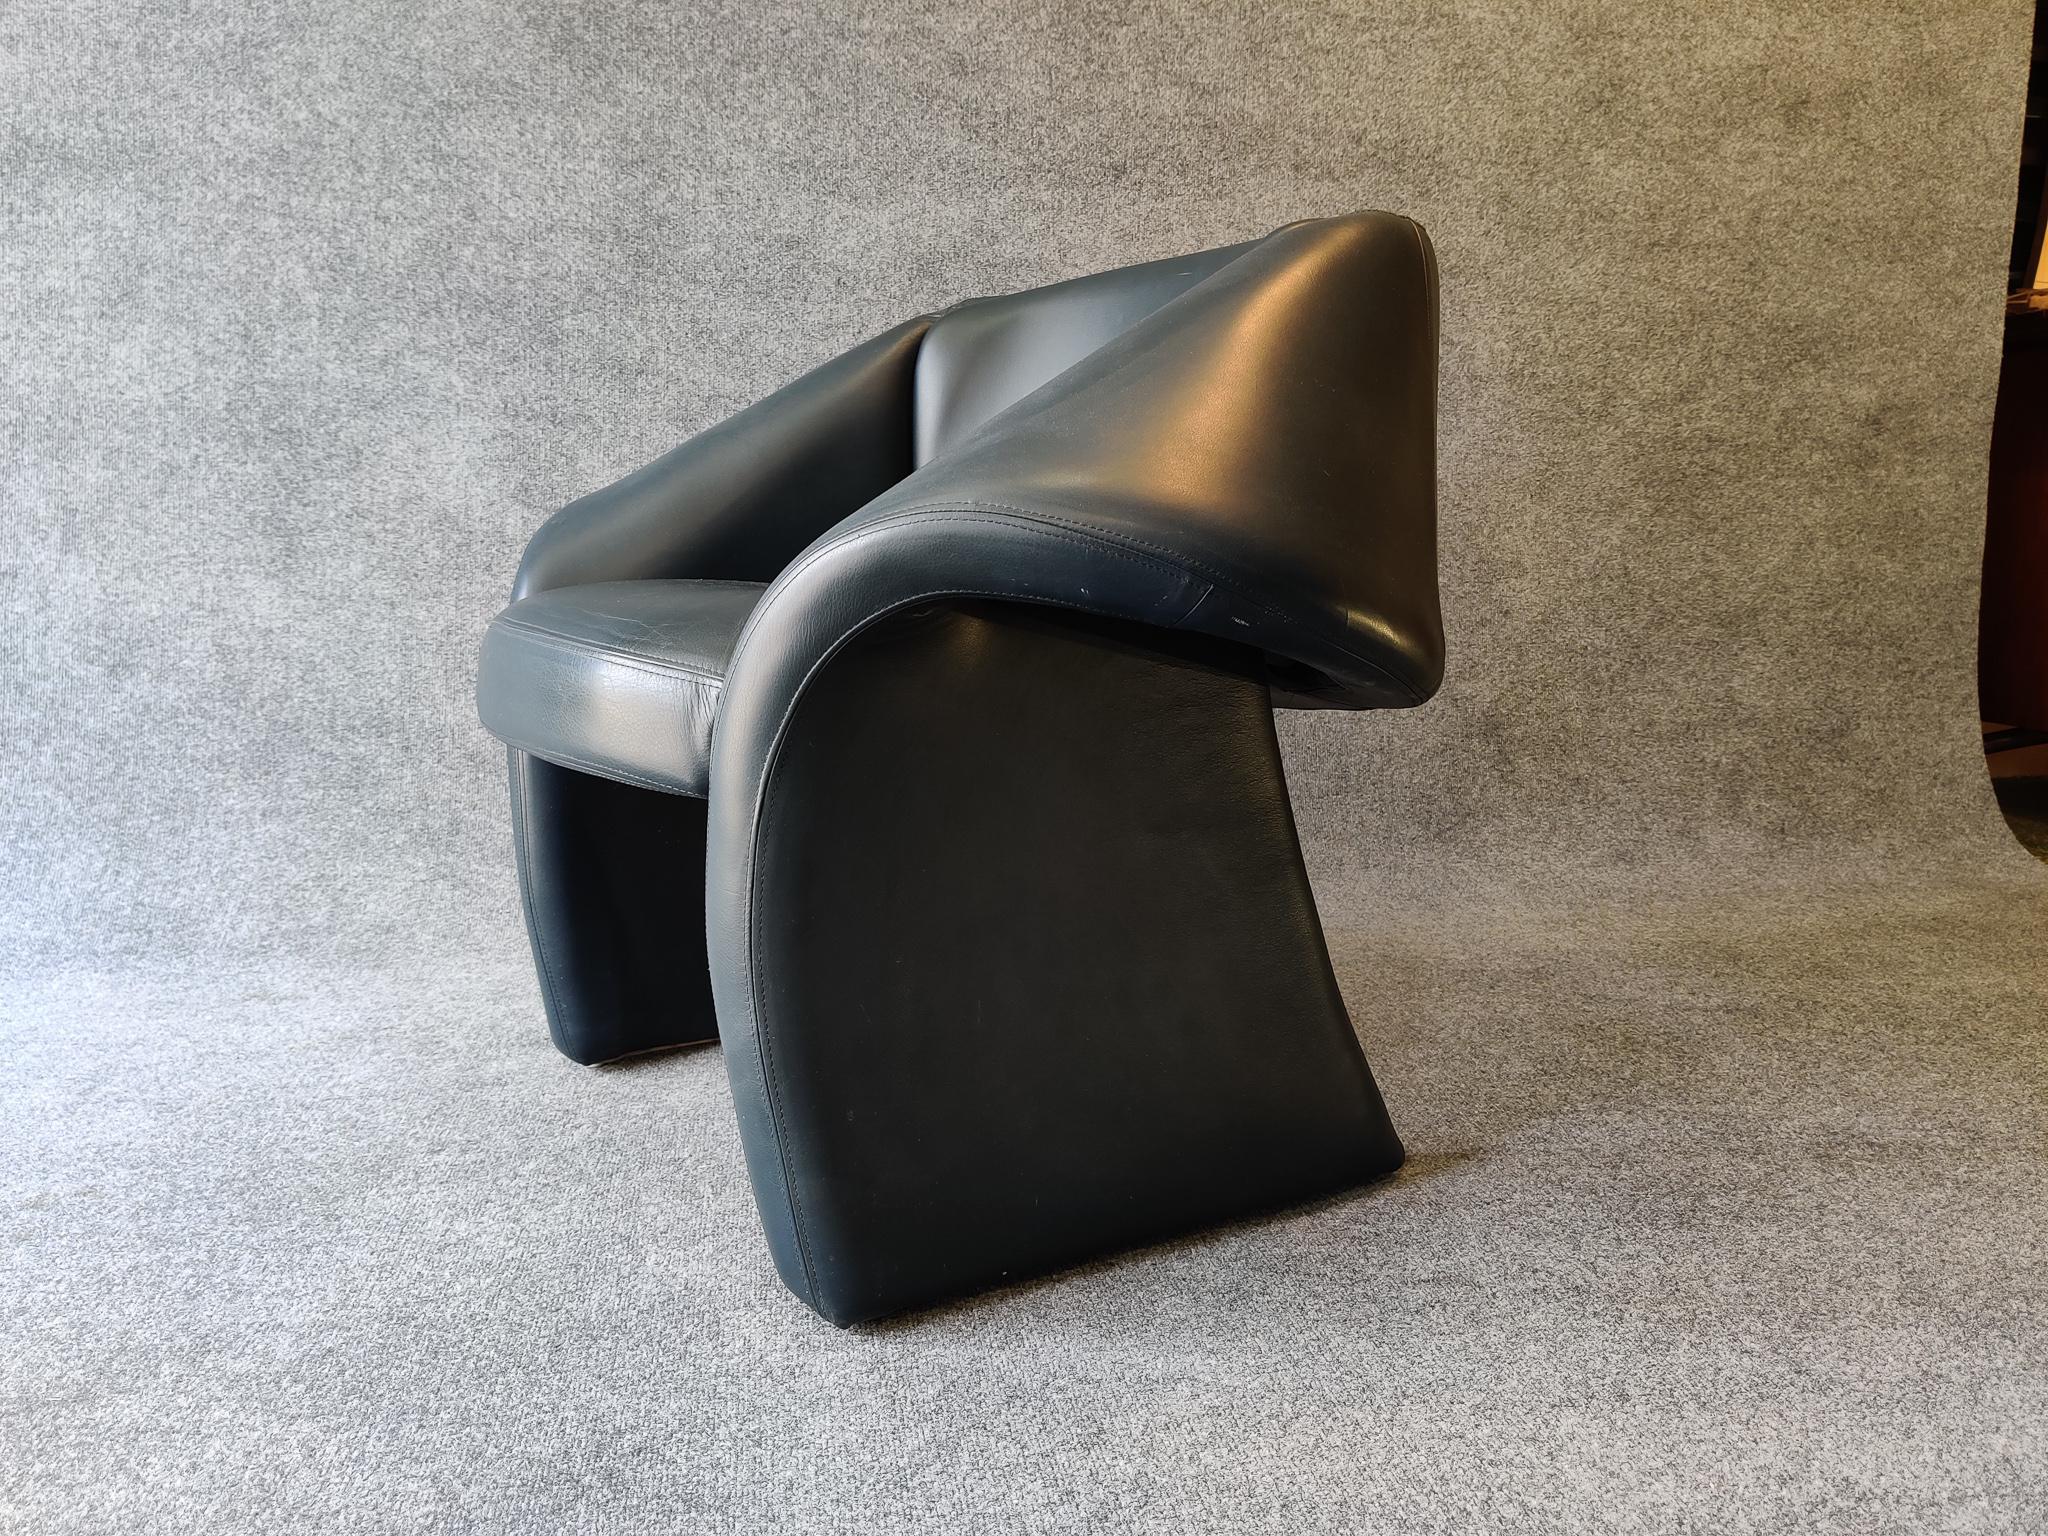 Un fauteuil ou un fauteuil de salon tout cuir (bleu foncé) super sculptural et très confortable. Produit aux États-Unis à la fin des années 1970 ou au début des années 1980. Cette chaise dynamique a une présence incroyable, avec une forme générale